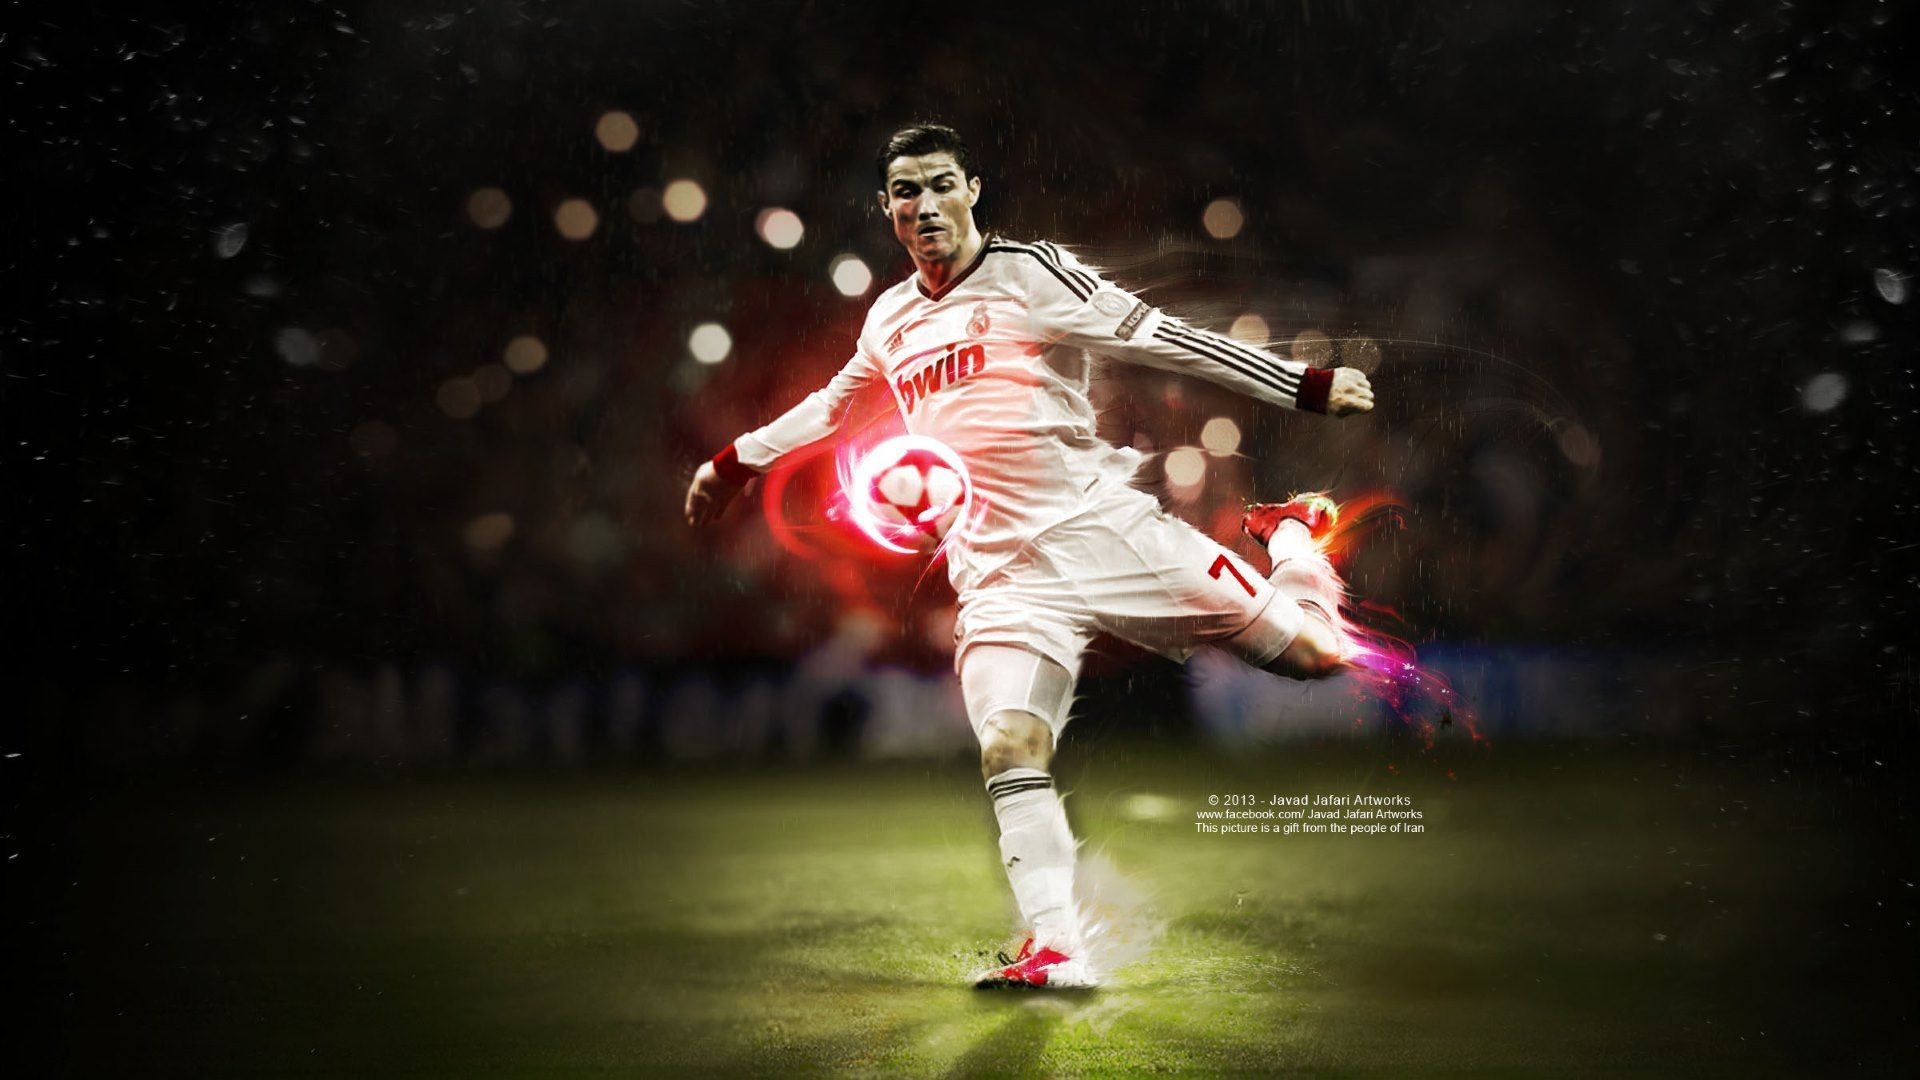 Cristiano Ronaldo: \